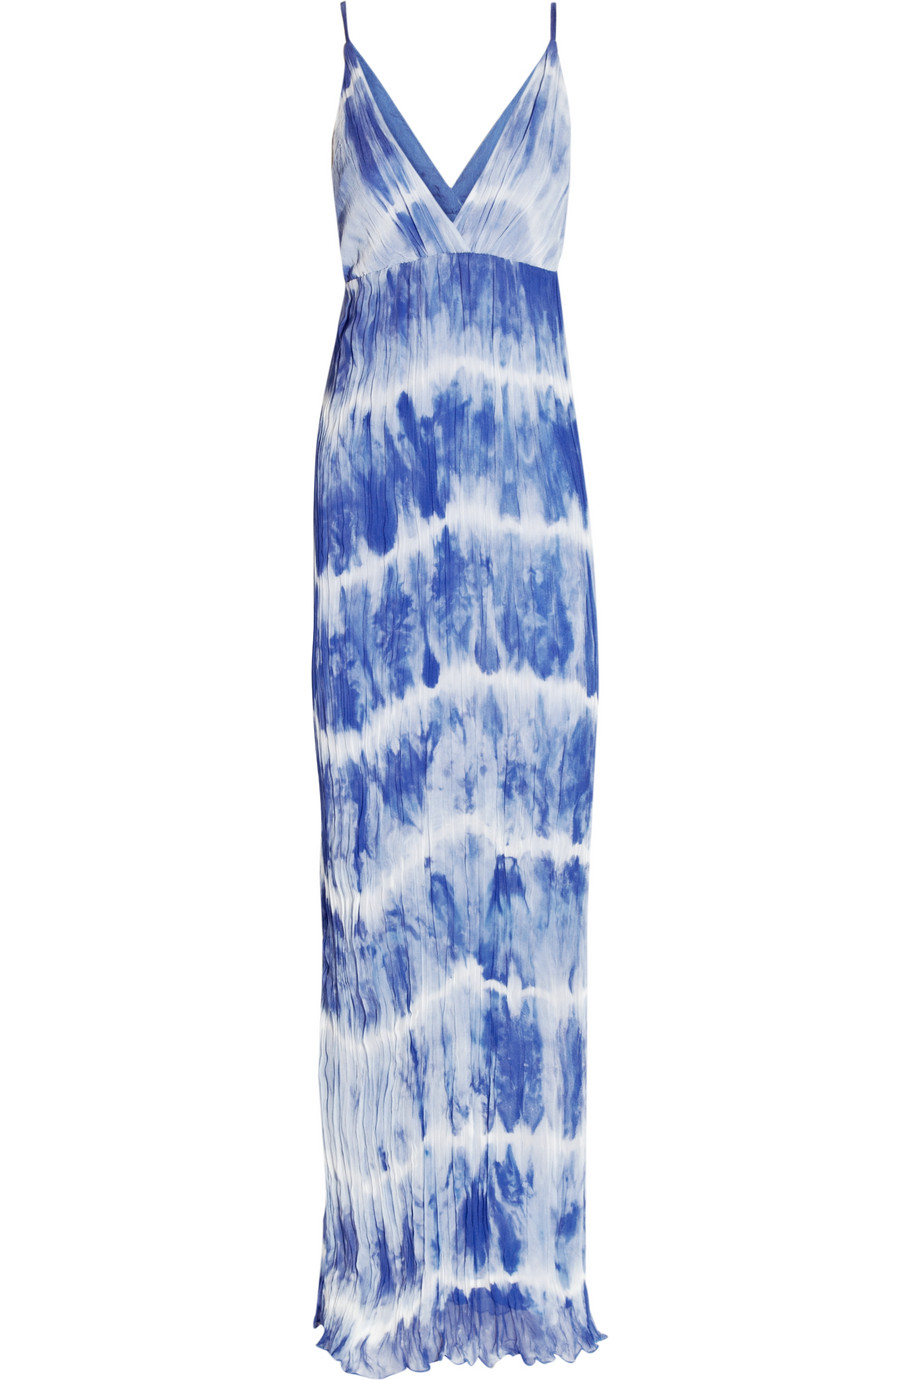 Lyst - Alice + olivia Stevie Tie Dye Silk Chiffon Maxi Dress in Blue